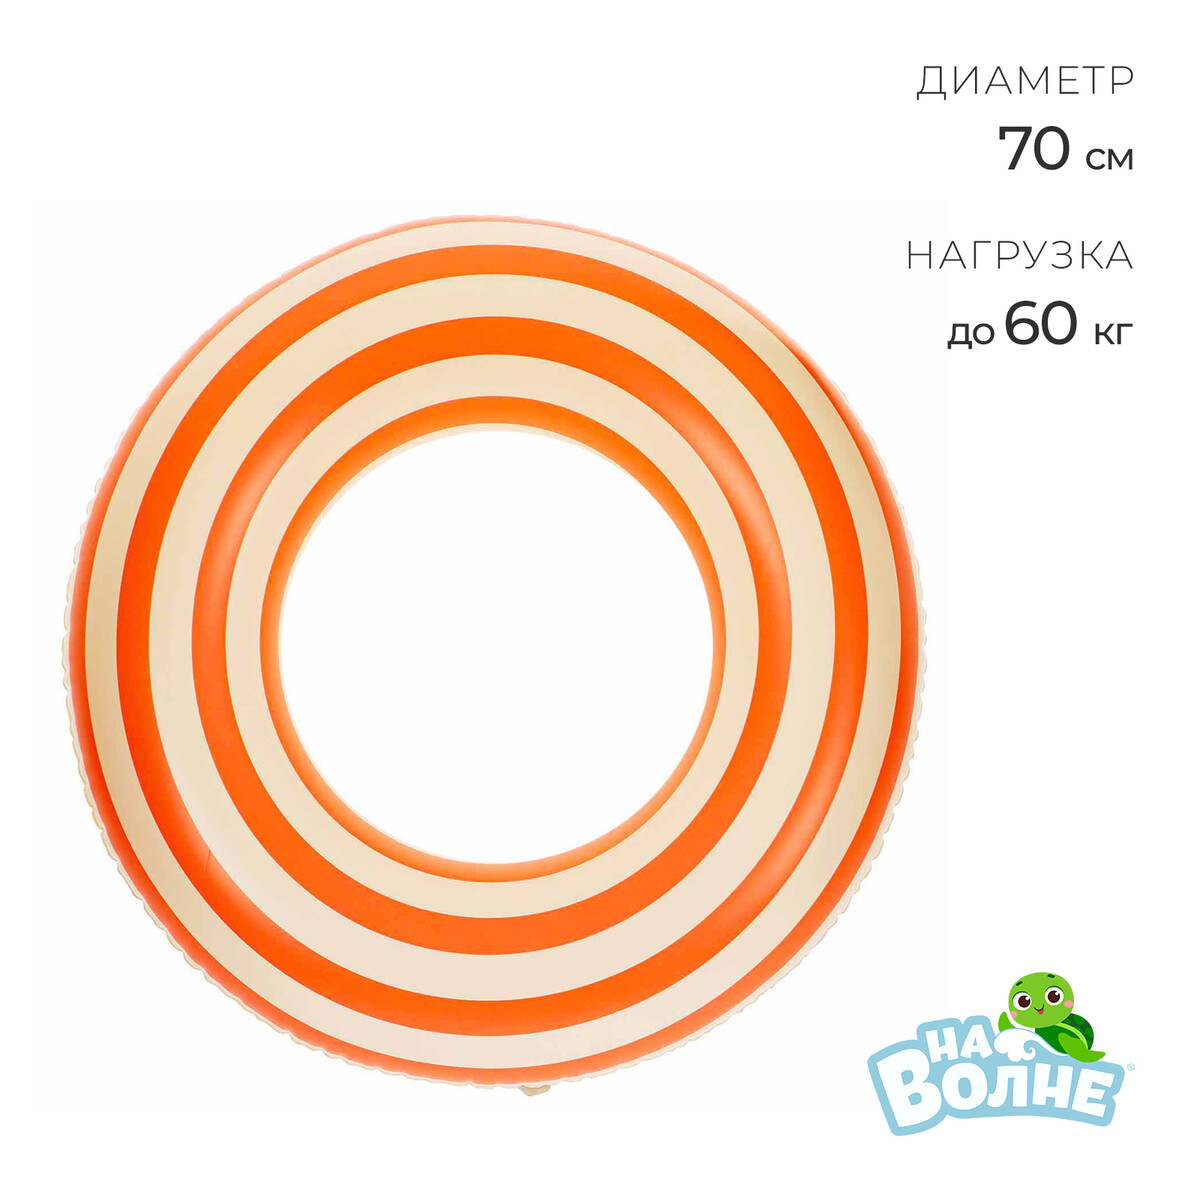 Круг для плавания 70 см, цвет белый/оранжевый круг для плавания 70 см белый оранжевый